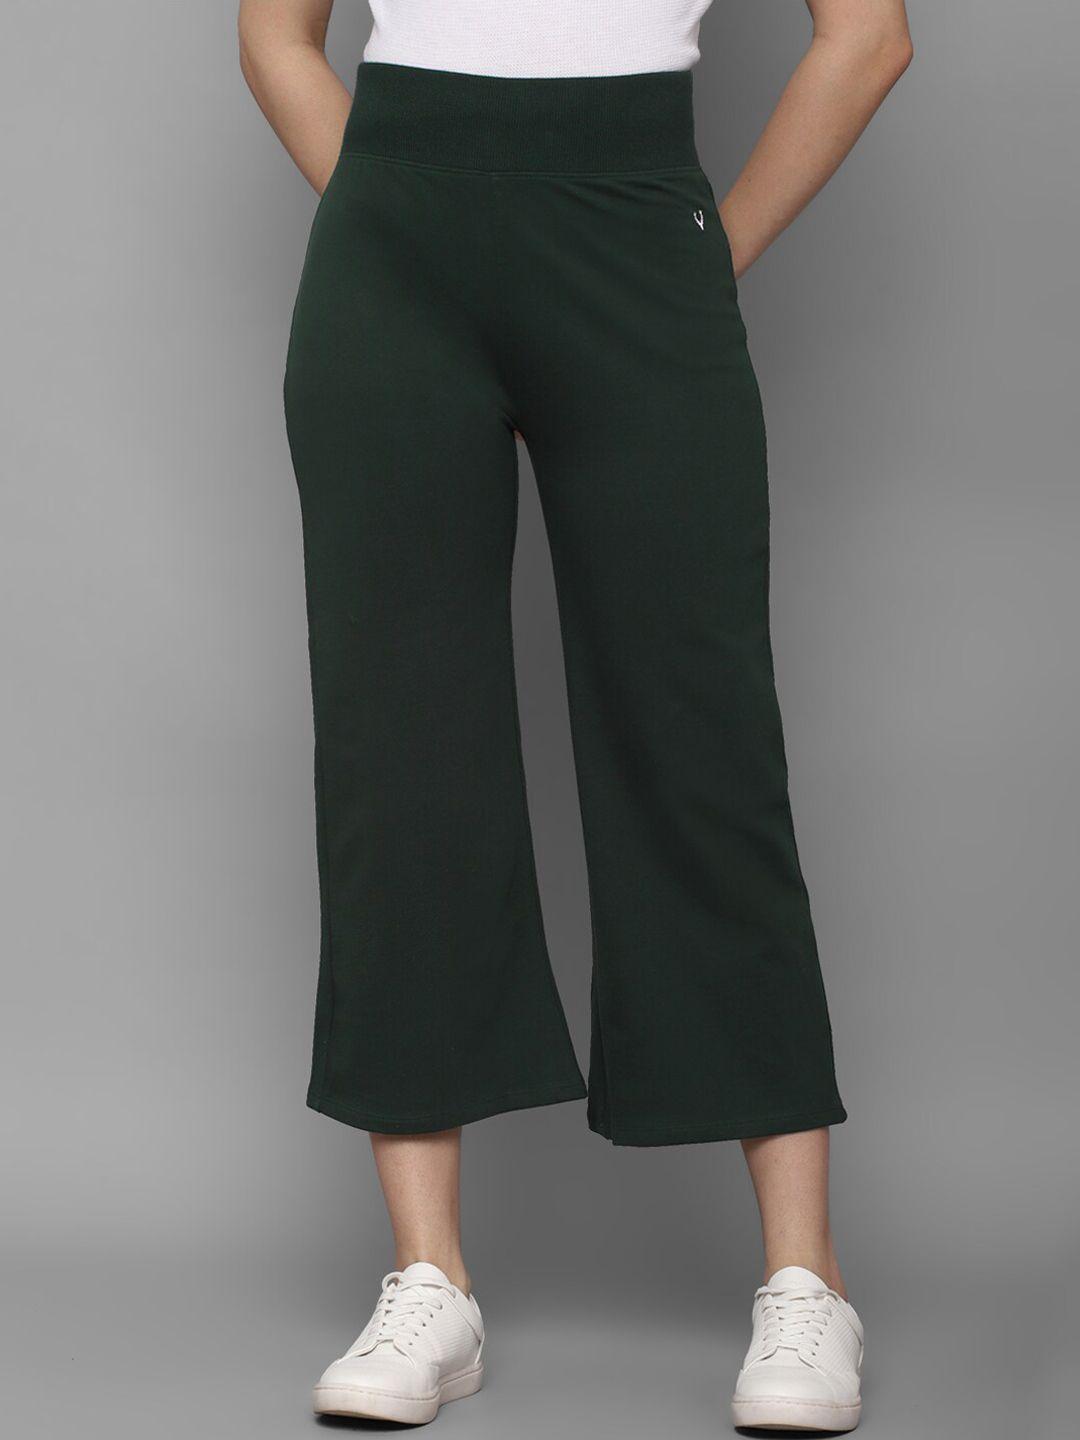 allen-solly-woman-women-green-trousers